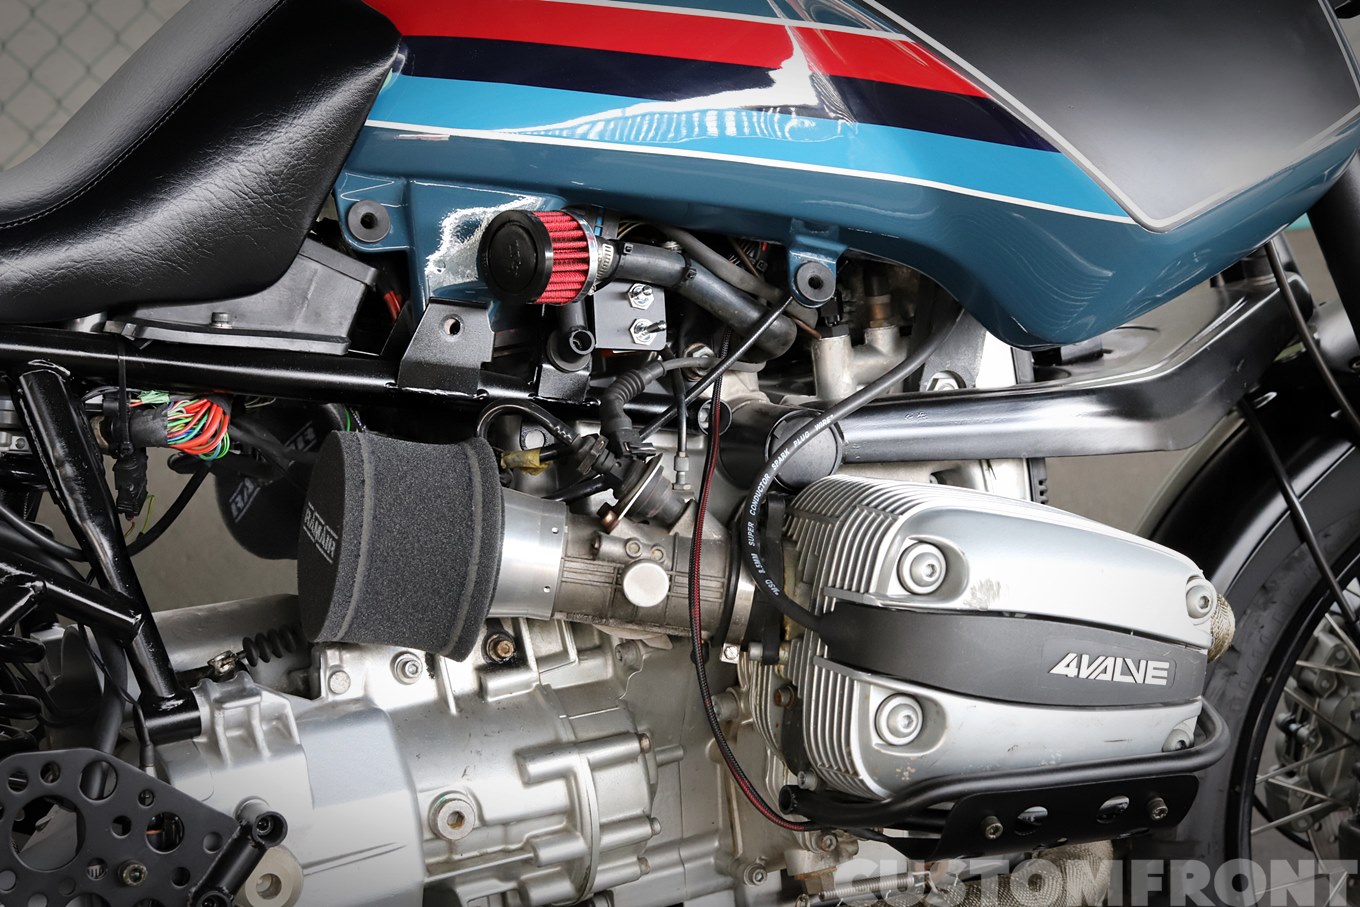 BMW R1100GSカスタムのエンジン